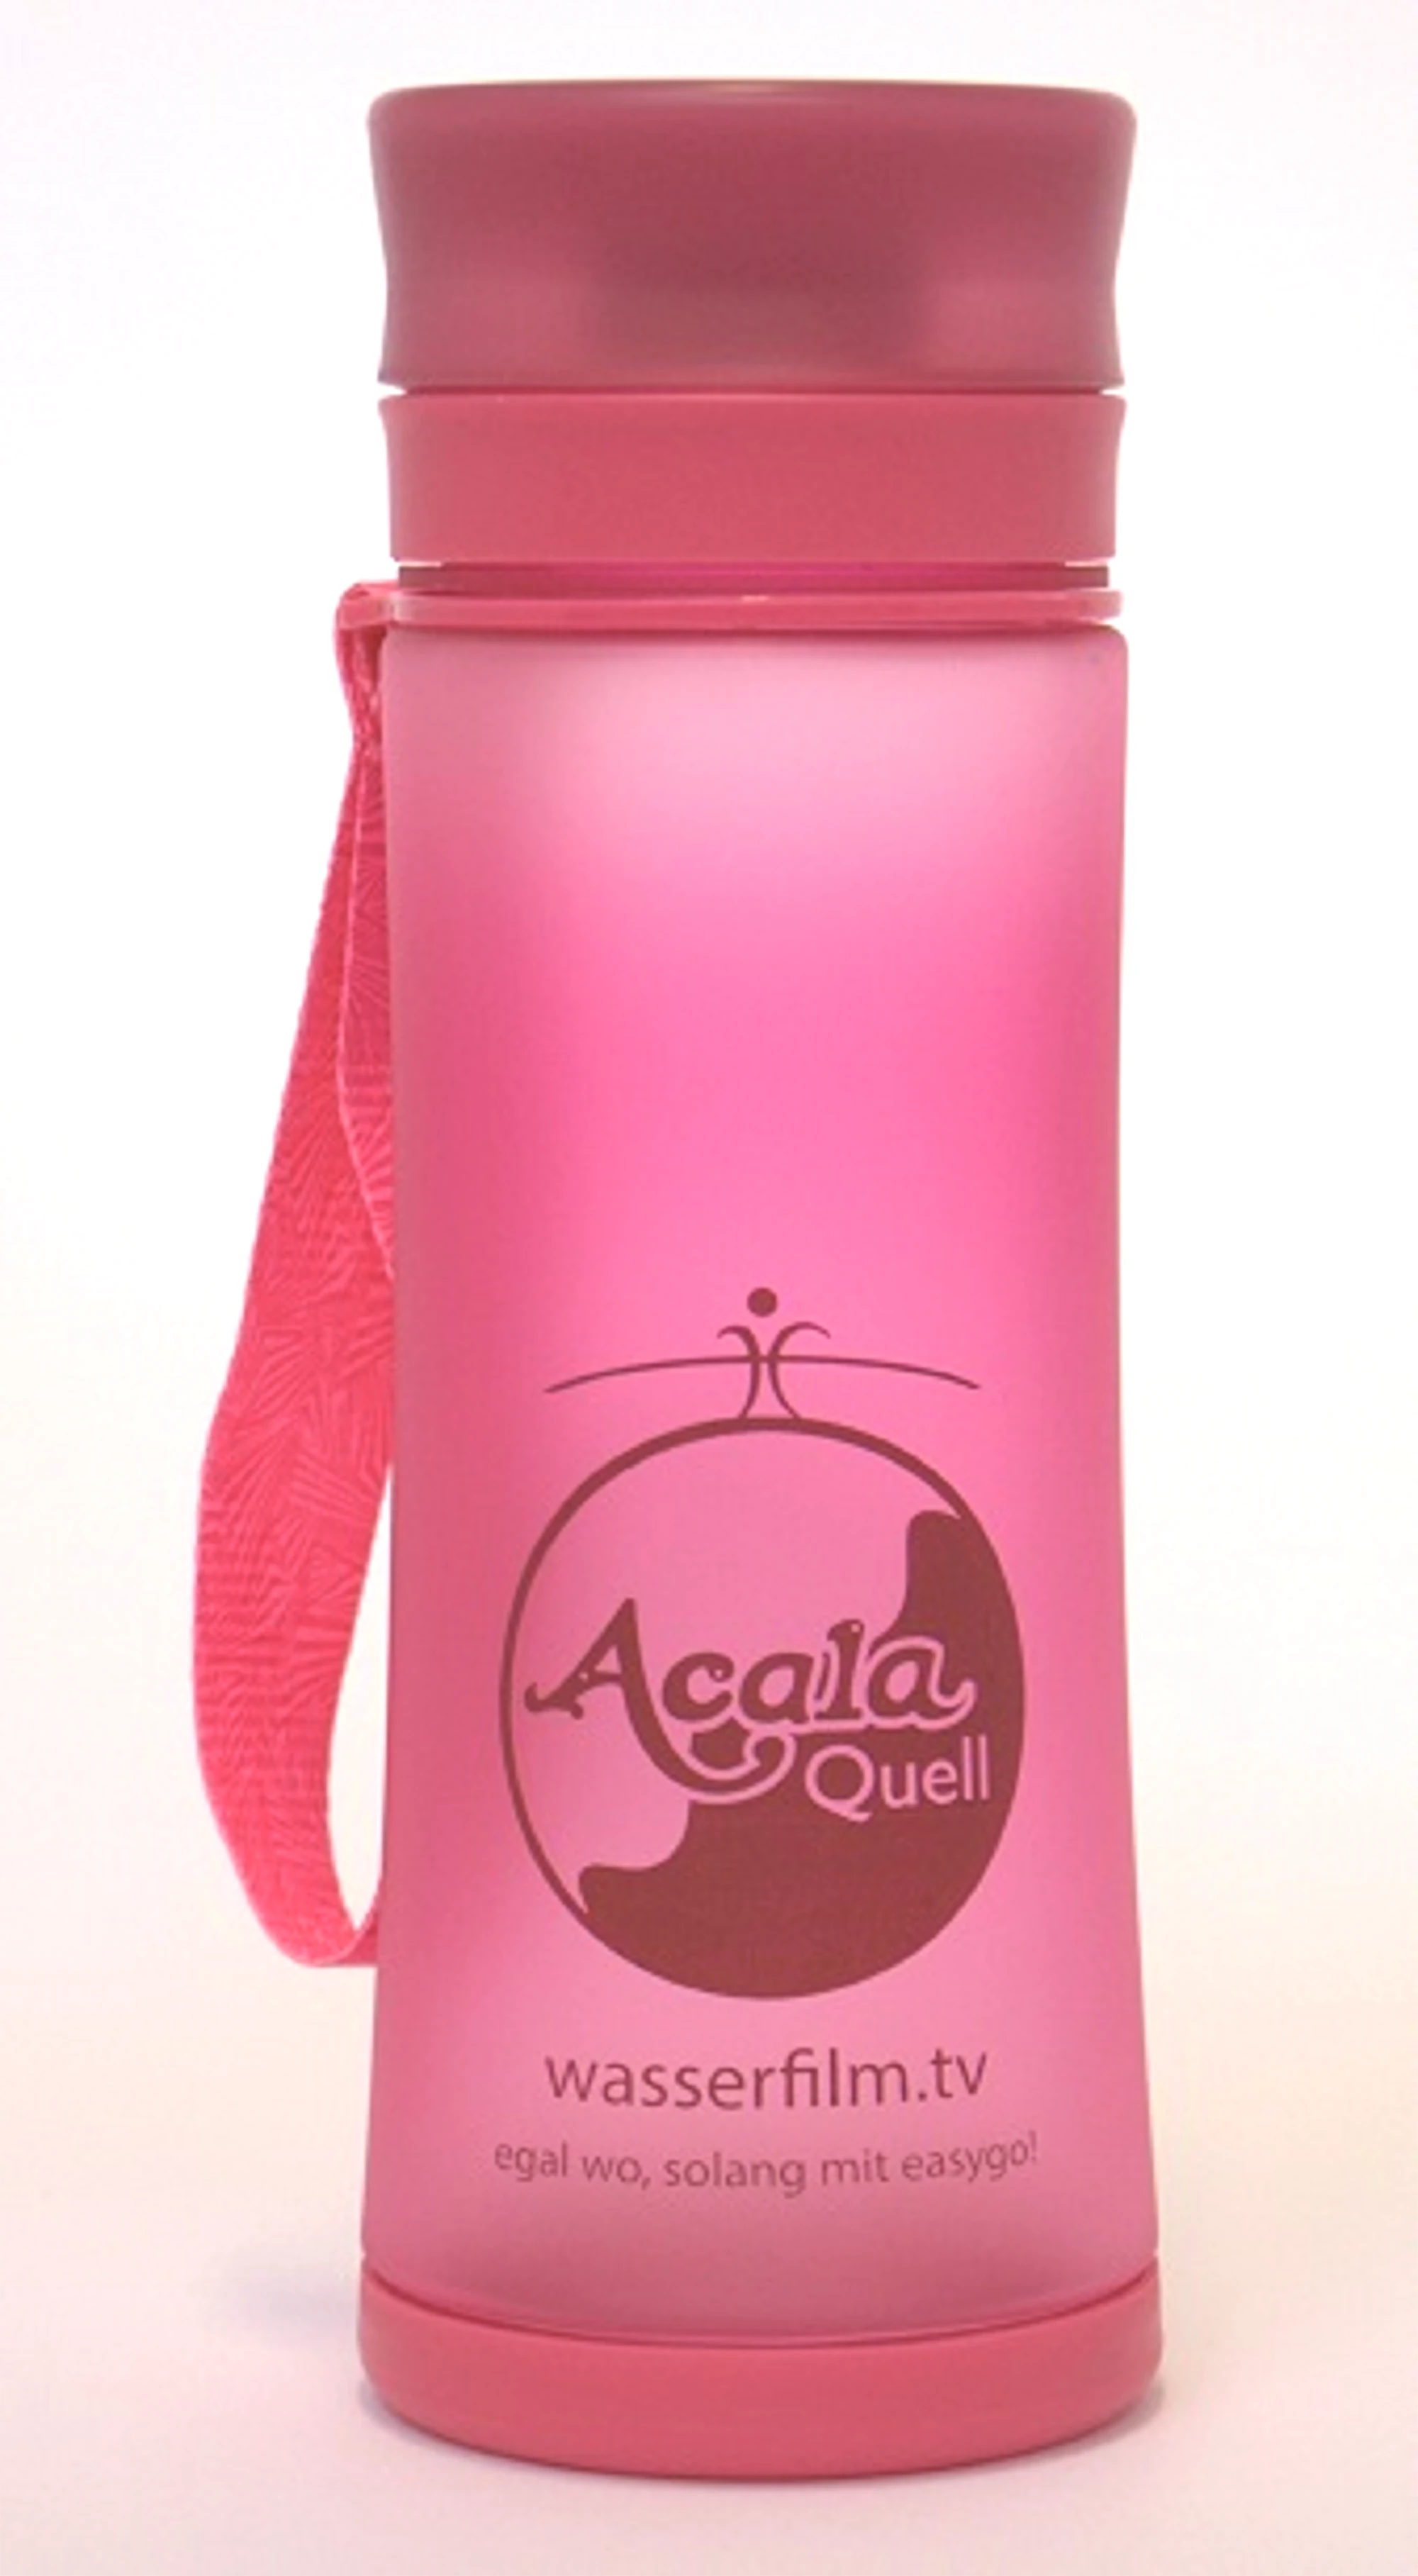 Zu sehen ist eine Trinkflasche in pink vor weißem Hintergrund. Vorne auf der Flasche sieht man das AcalaQuell Logo, darunter steht „Wasserfilm.tv“. An der Seite hängt ein Band vom Deckel der Flasche, womit diese getragen werden kann.